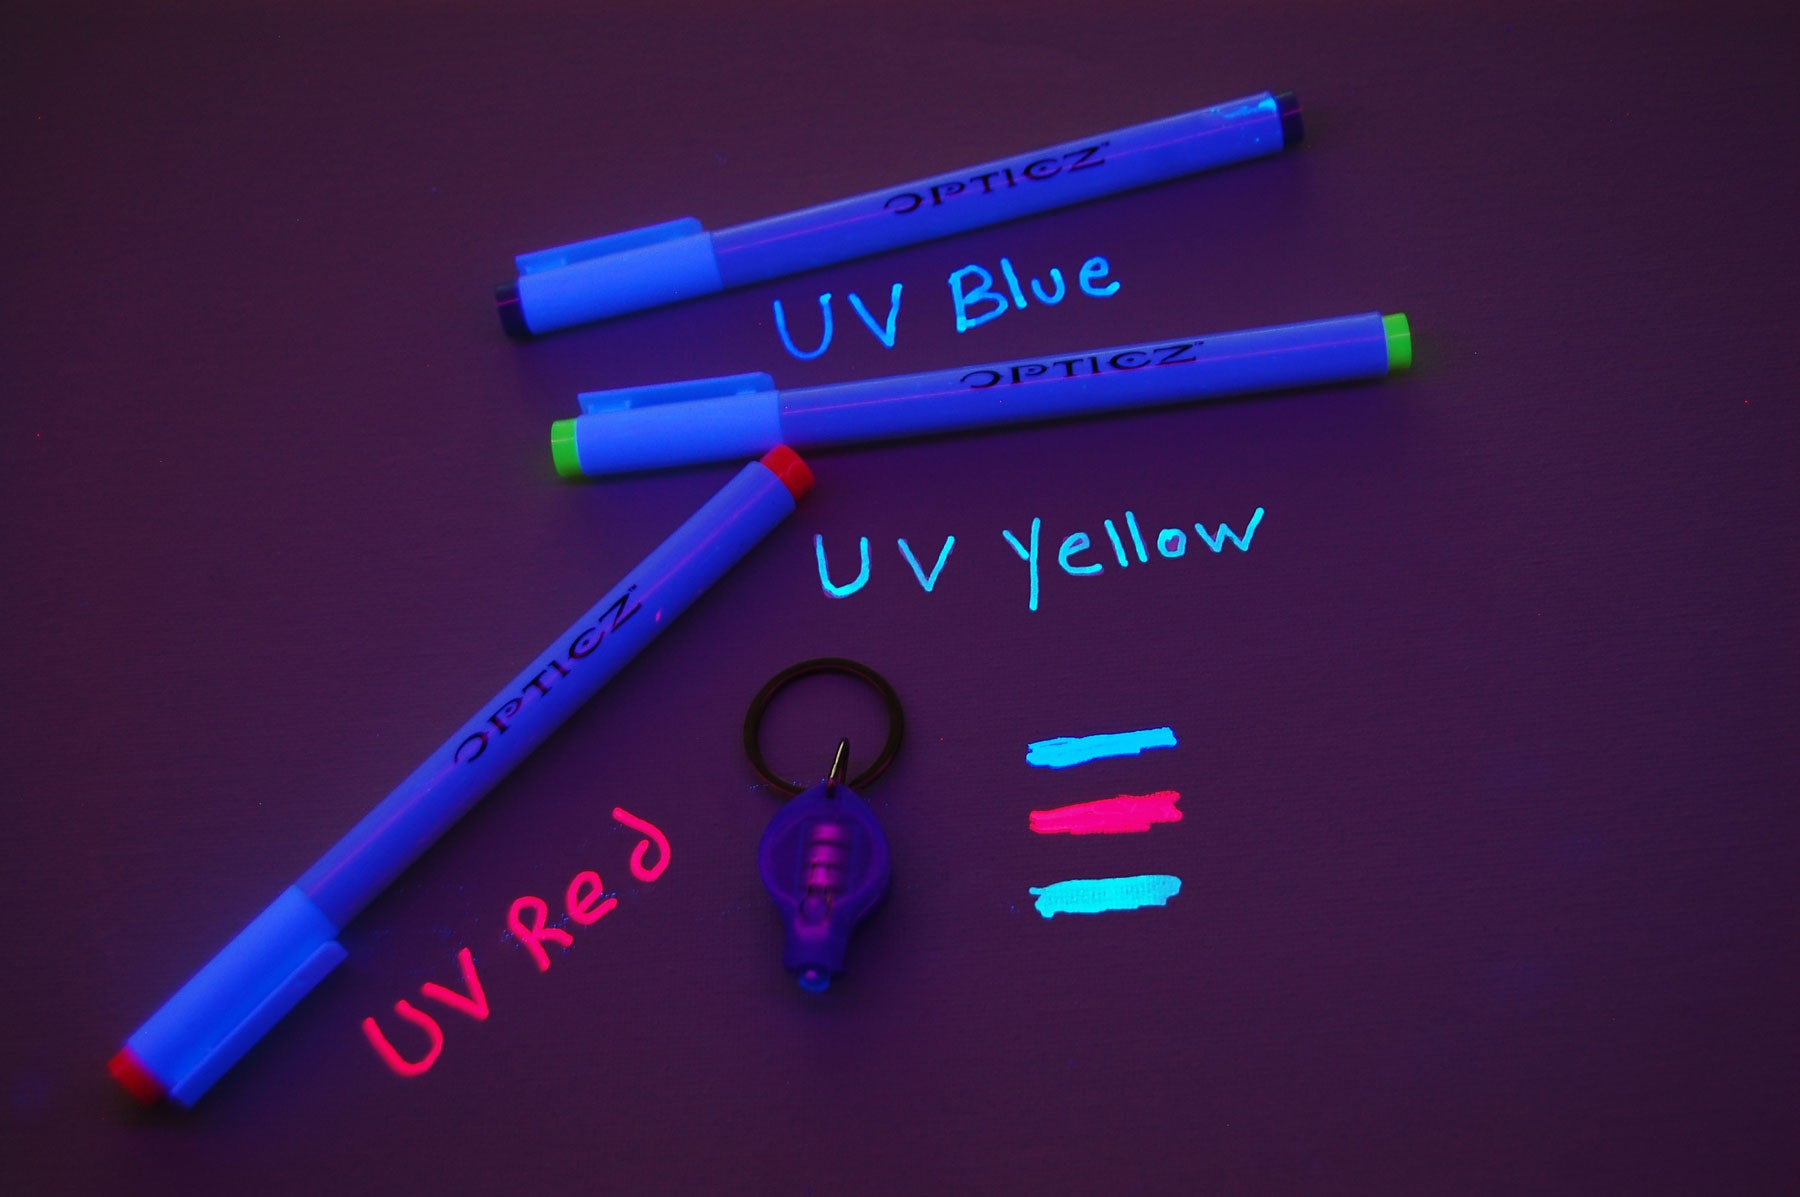 Ultraviolet Markers